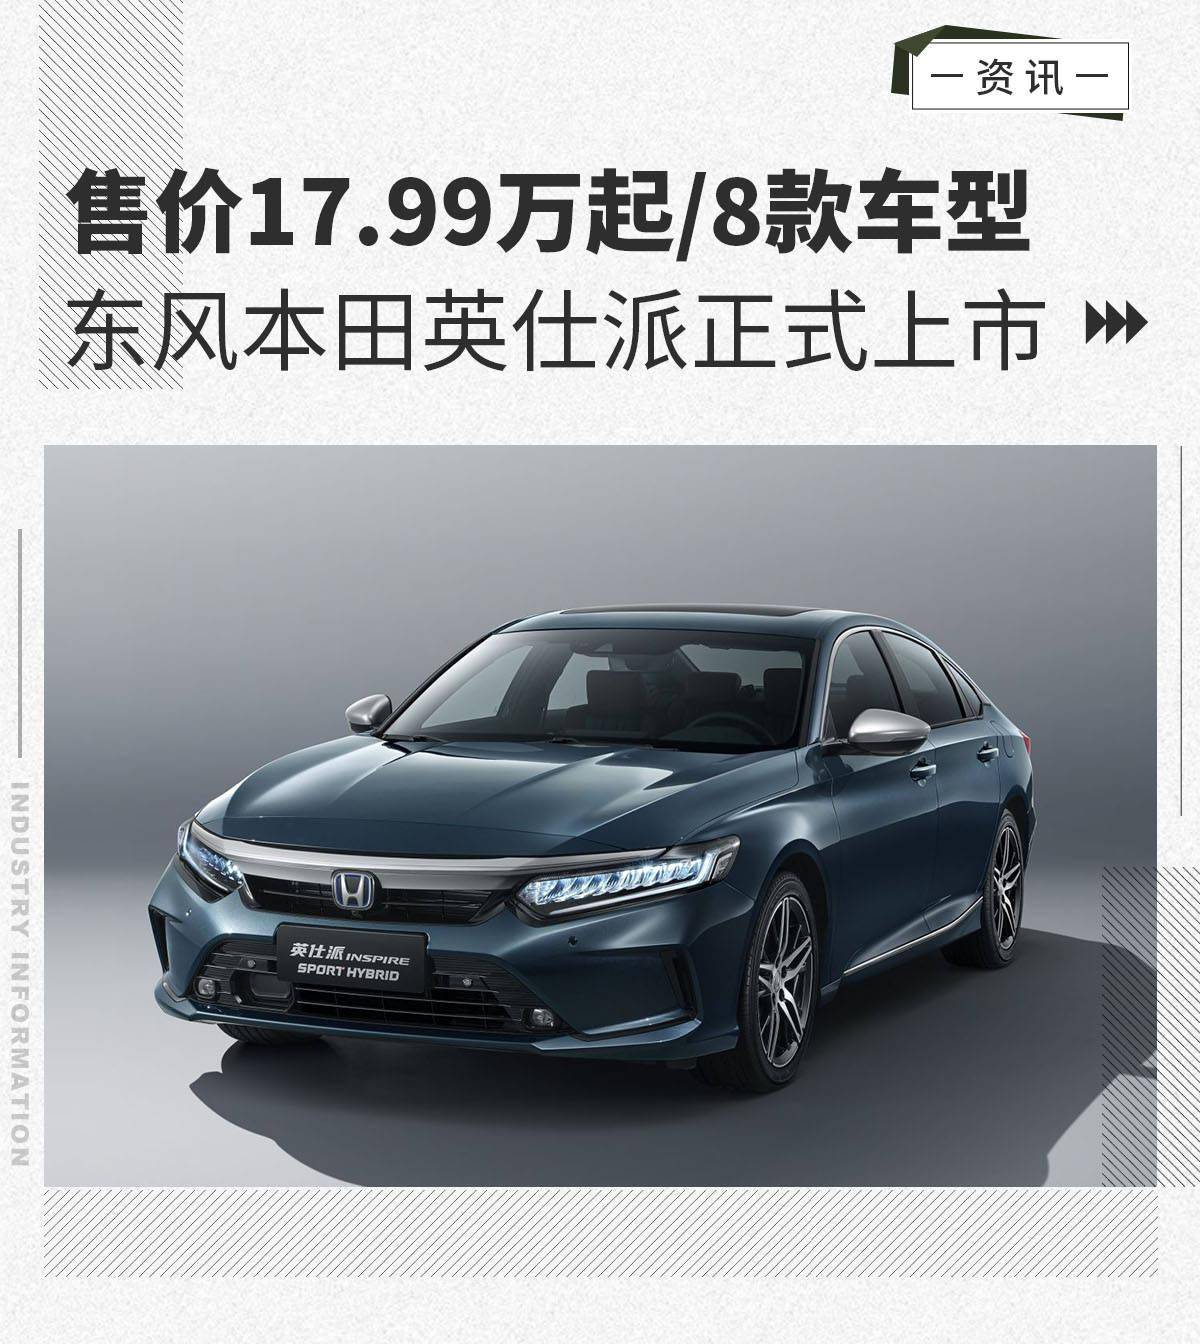 售价17 99万起 8款车型东风本田英仕派正式上市 新车